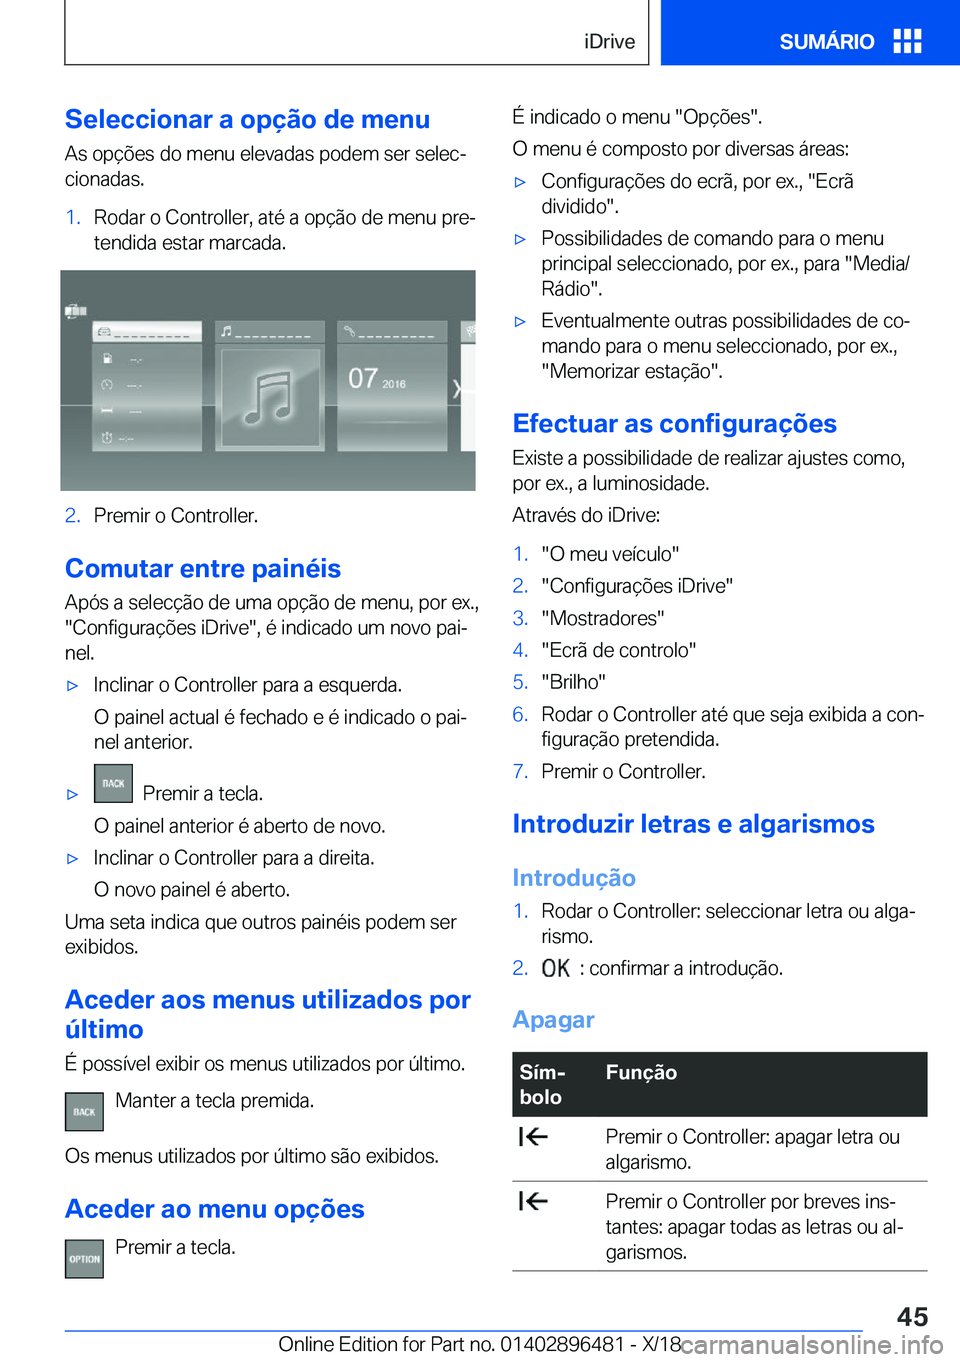 BMW X1 2019  Manual do condutor (in Portuguese) �S�e�l�e�c�c�i�o�n�a�r��a��o�p�